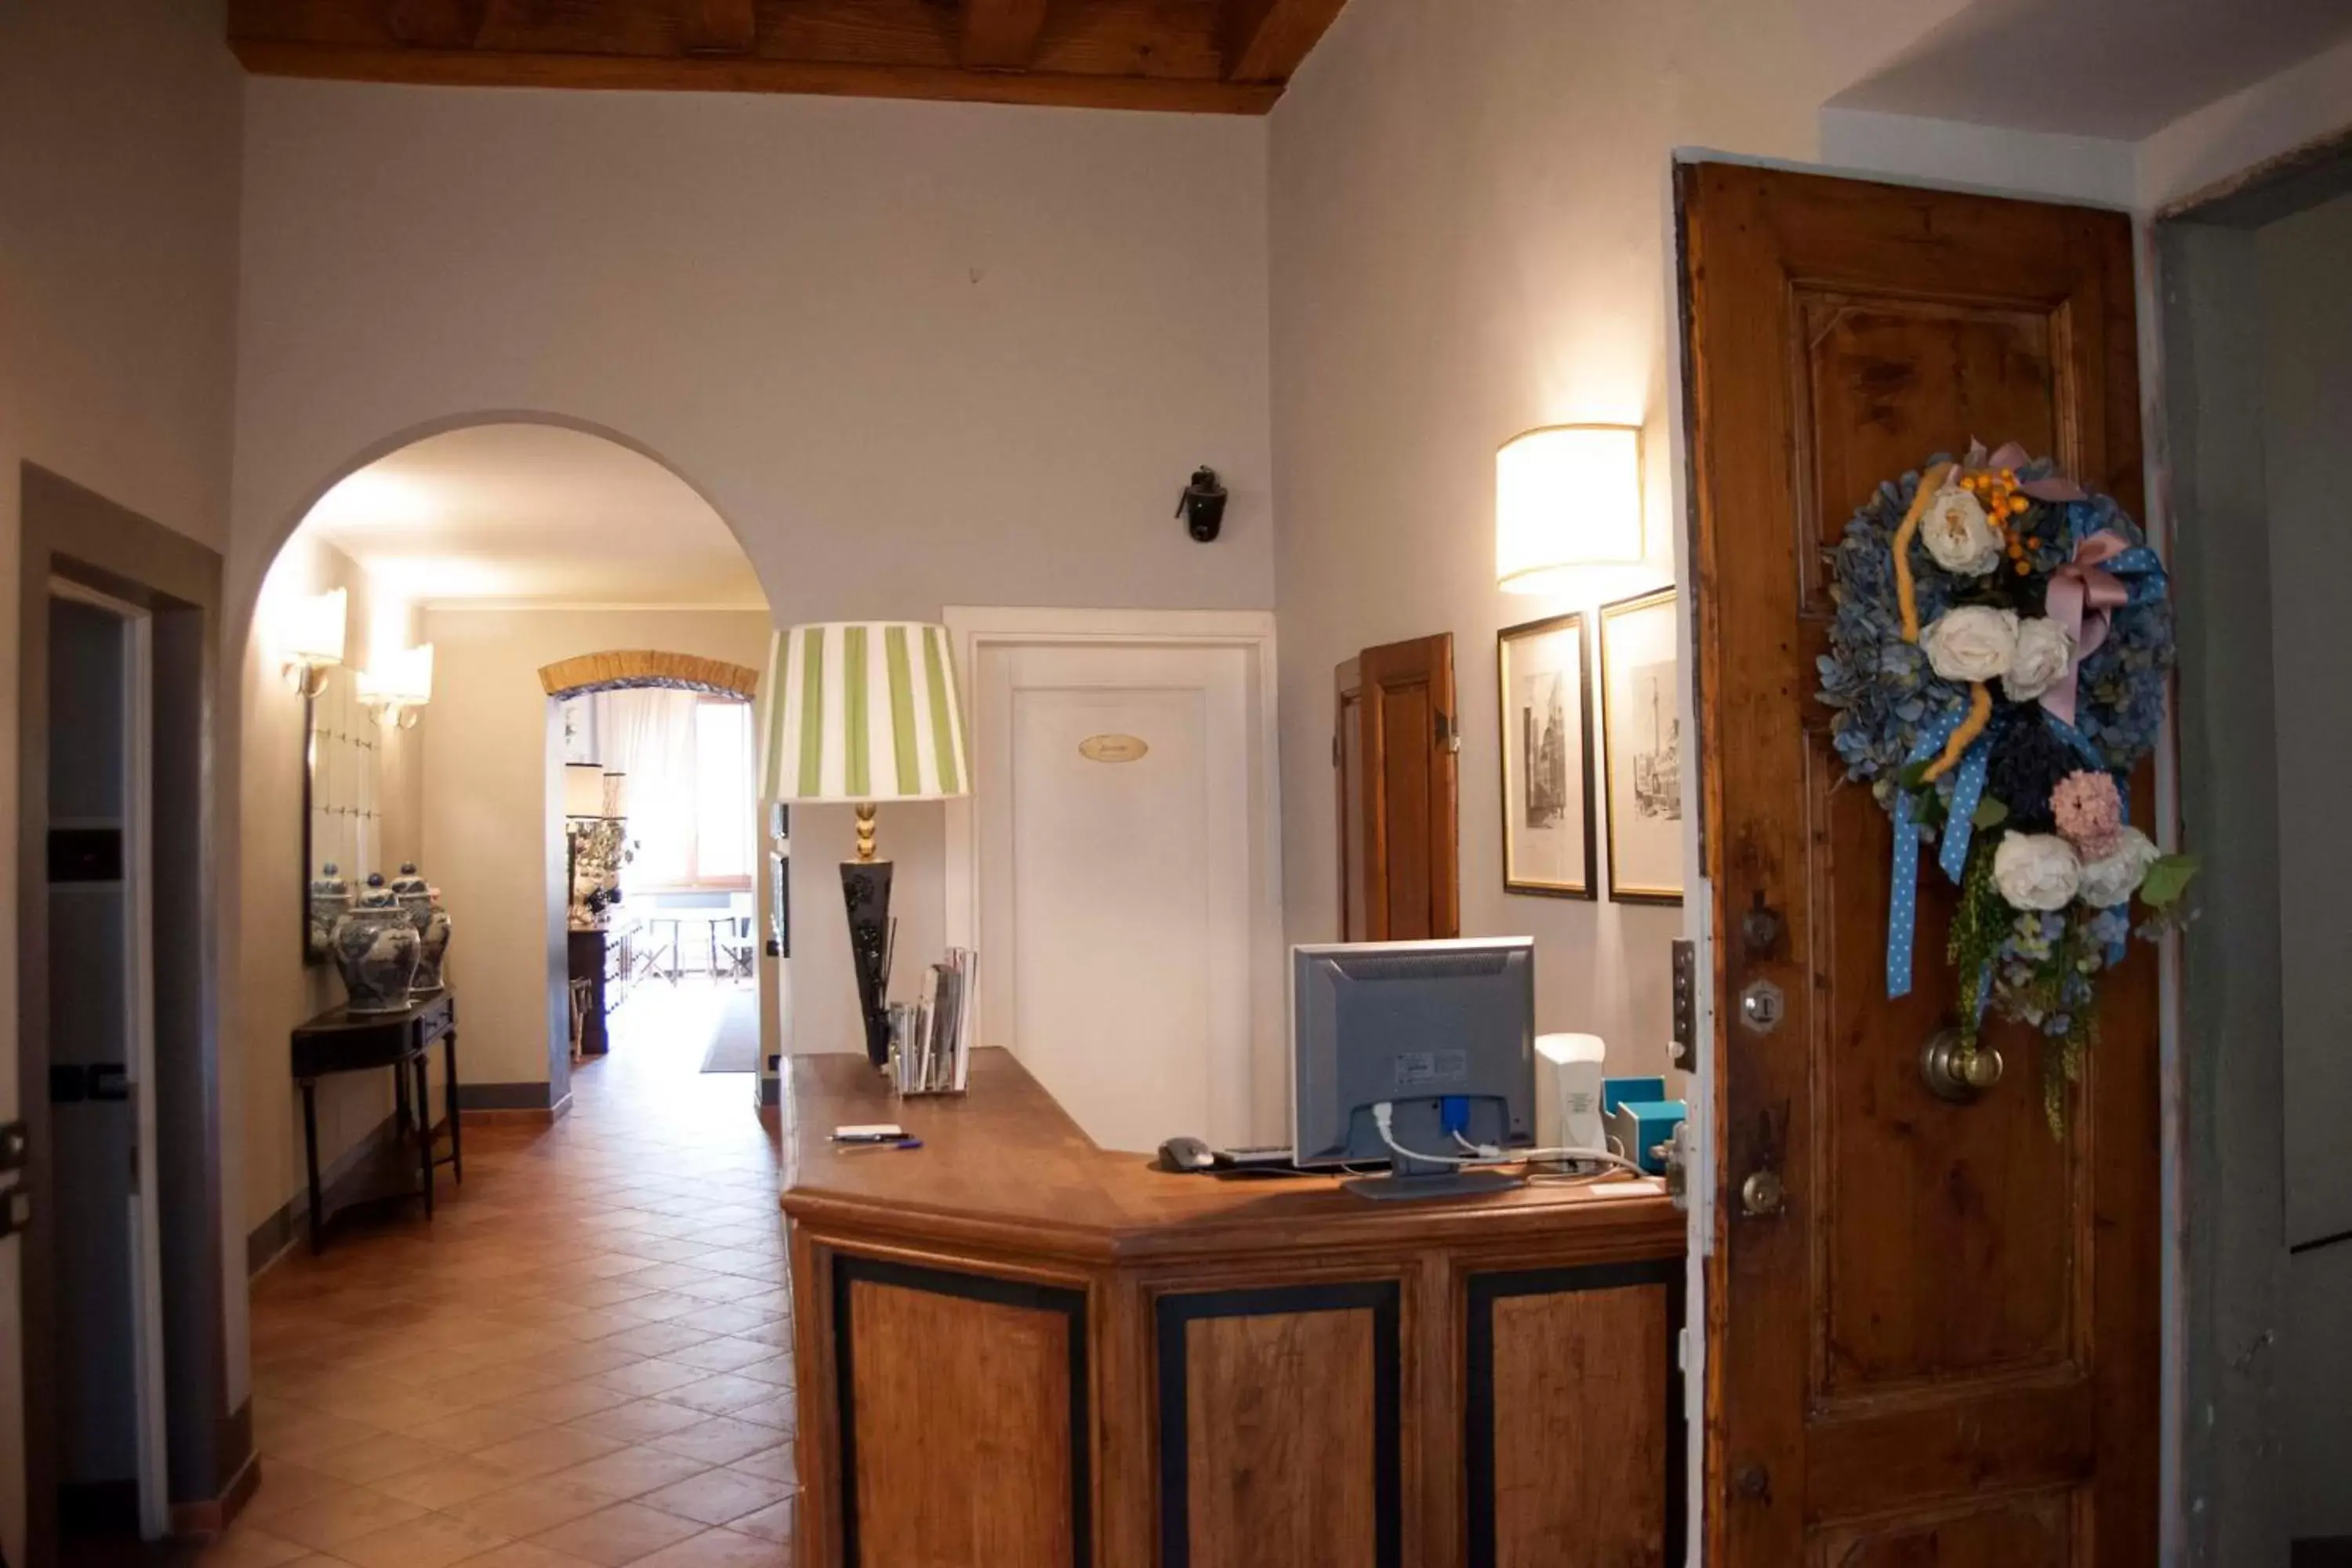 Lobby or reception, Lobby/Reception in Antica Dimora De' Benci